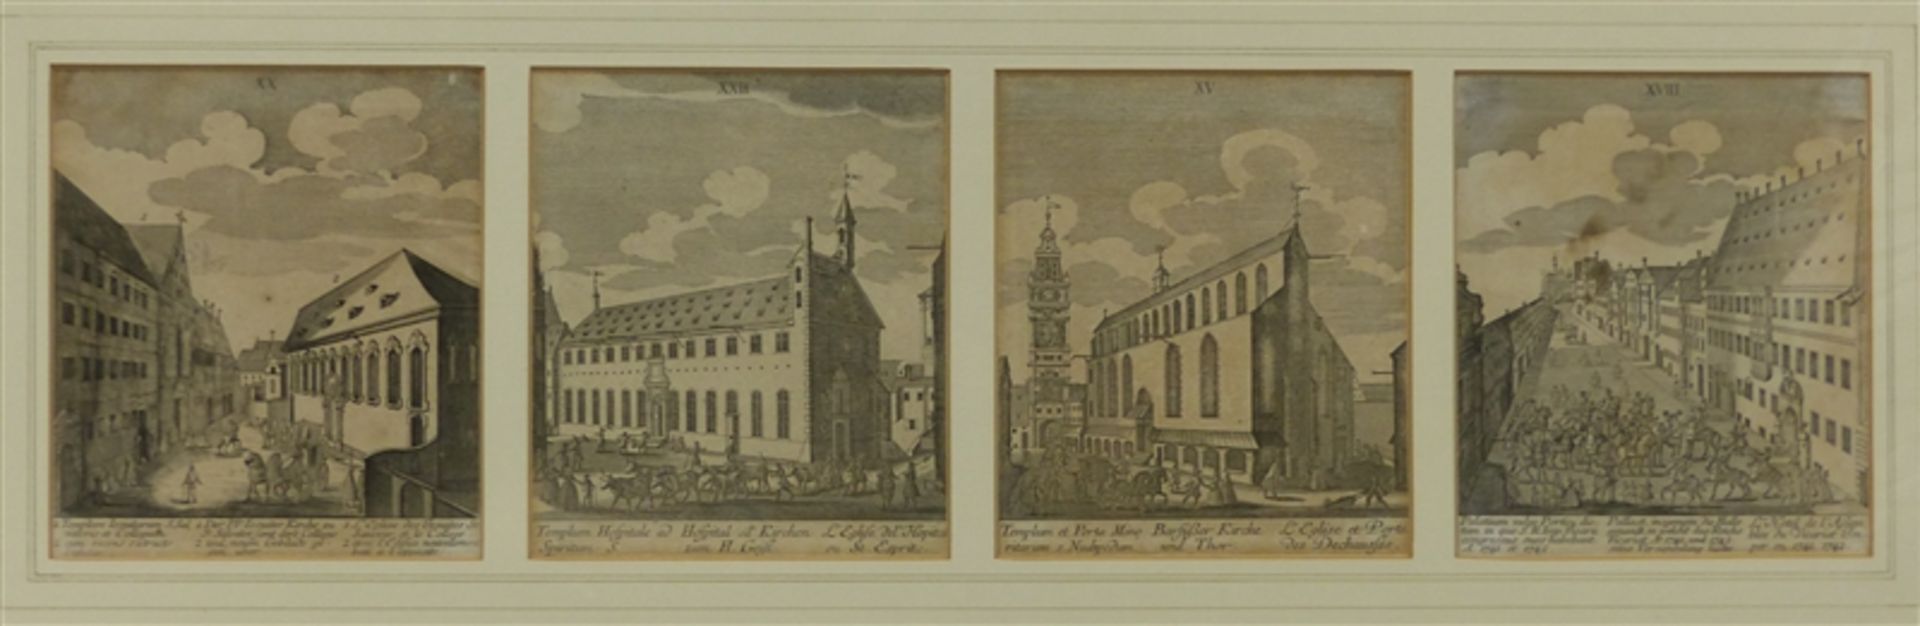 4 Kupferstiche, um 1800 Augsburger Ansichten, mit Beschreibung, je 17x14 cm, in einem Rahmen,